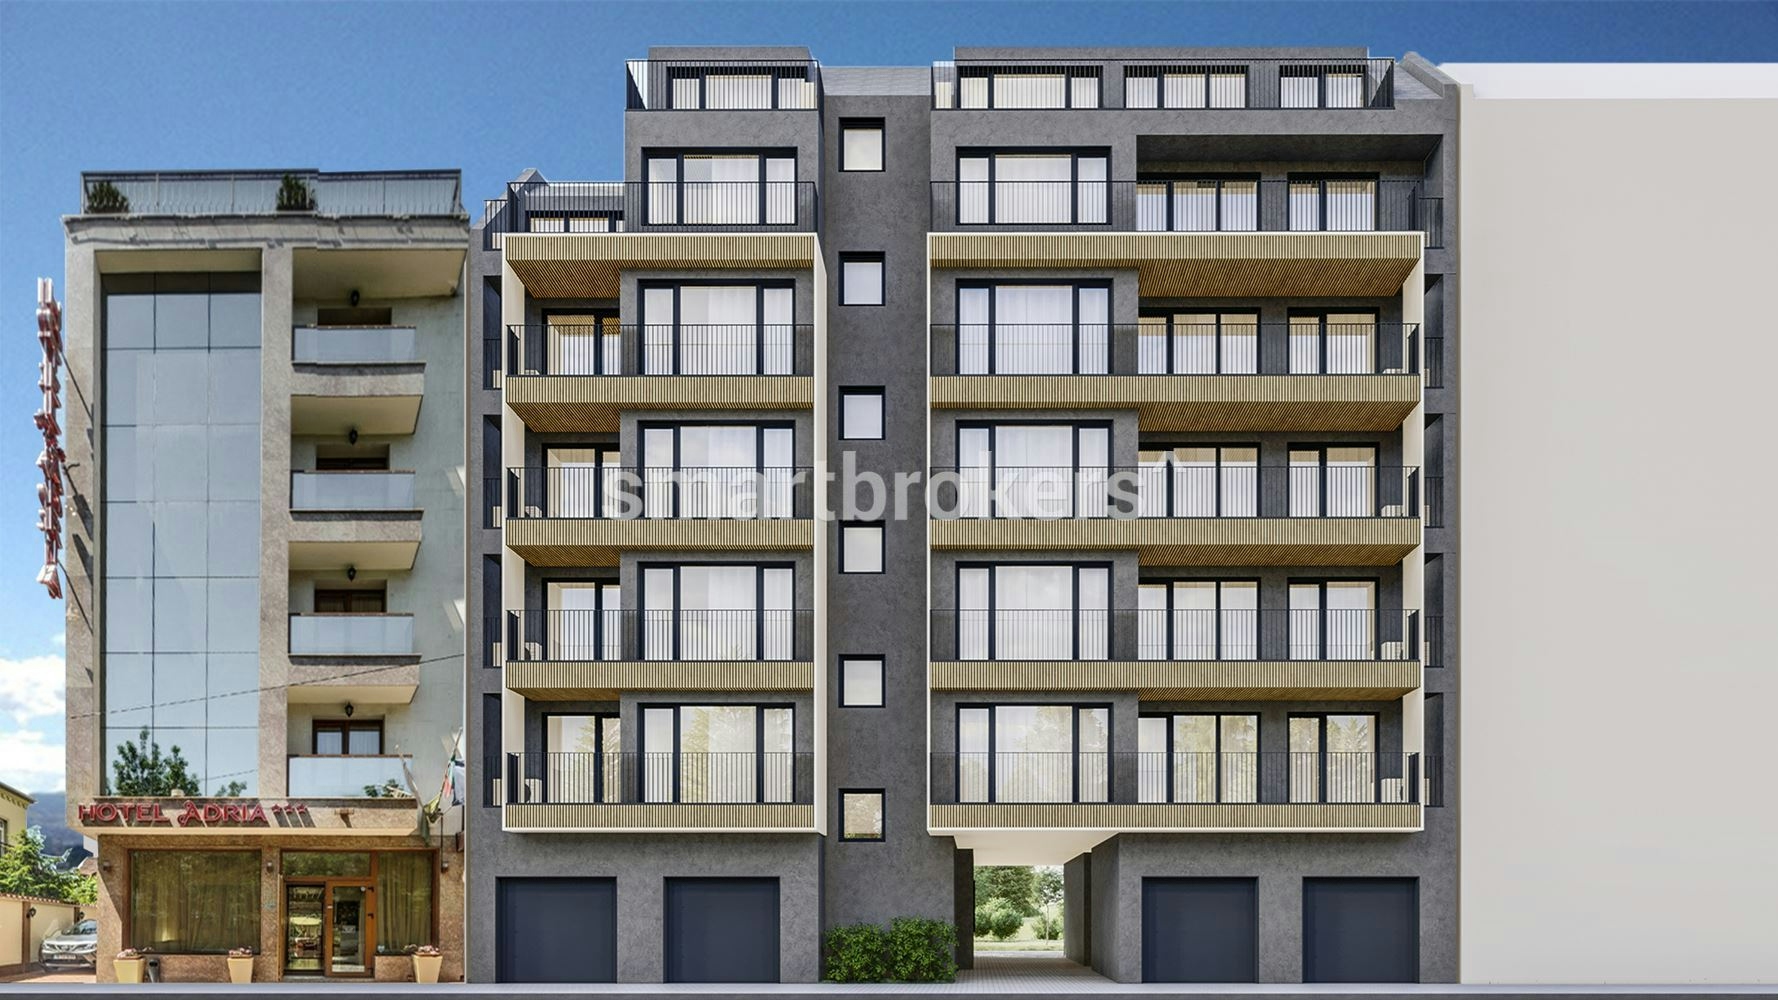 Тристаен апартамент за продажба в новострояща се бутикова жилищна сграда до хотел "Рамада" в центъра на града